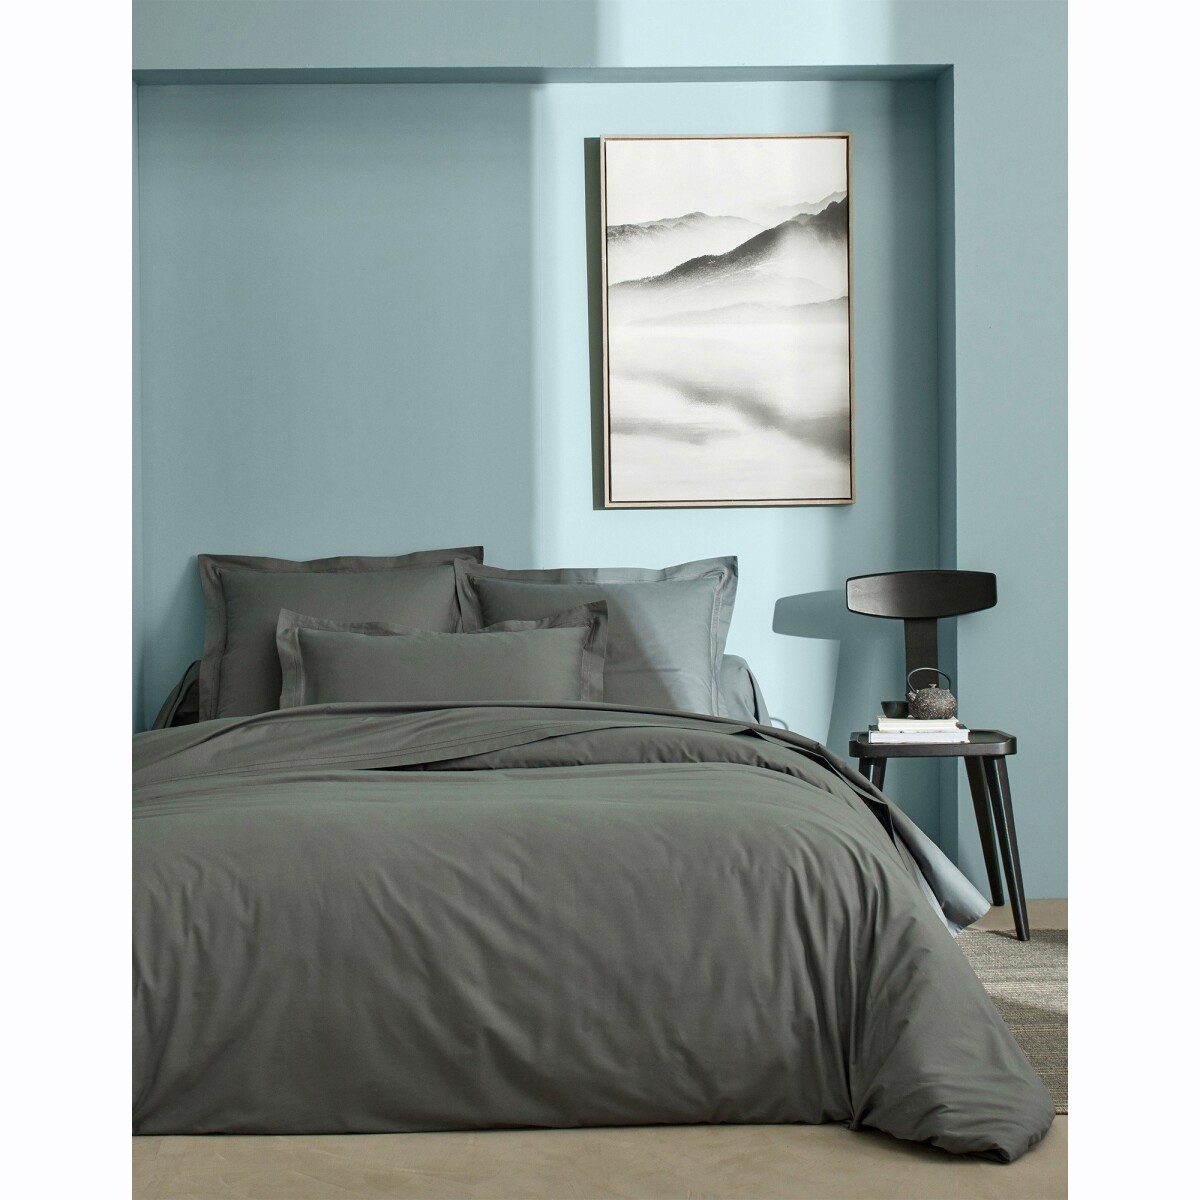 Jednofarebná posteľná bielizeň perkál, zn. Colombine ocelová sivá napínacia plachta 180x200cm